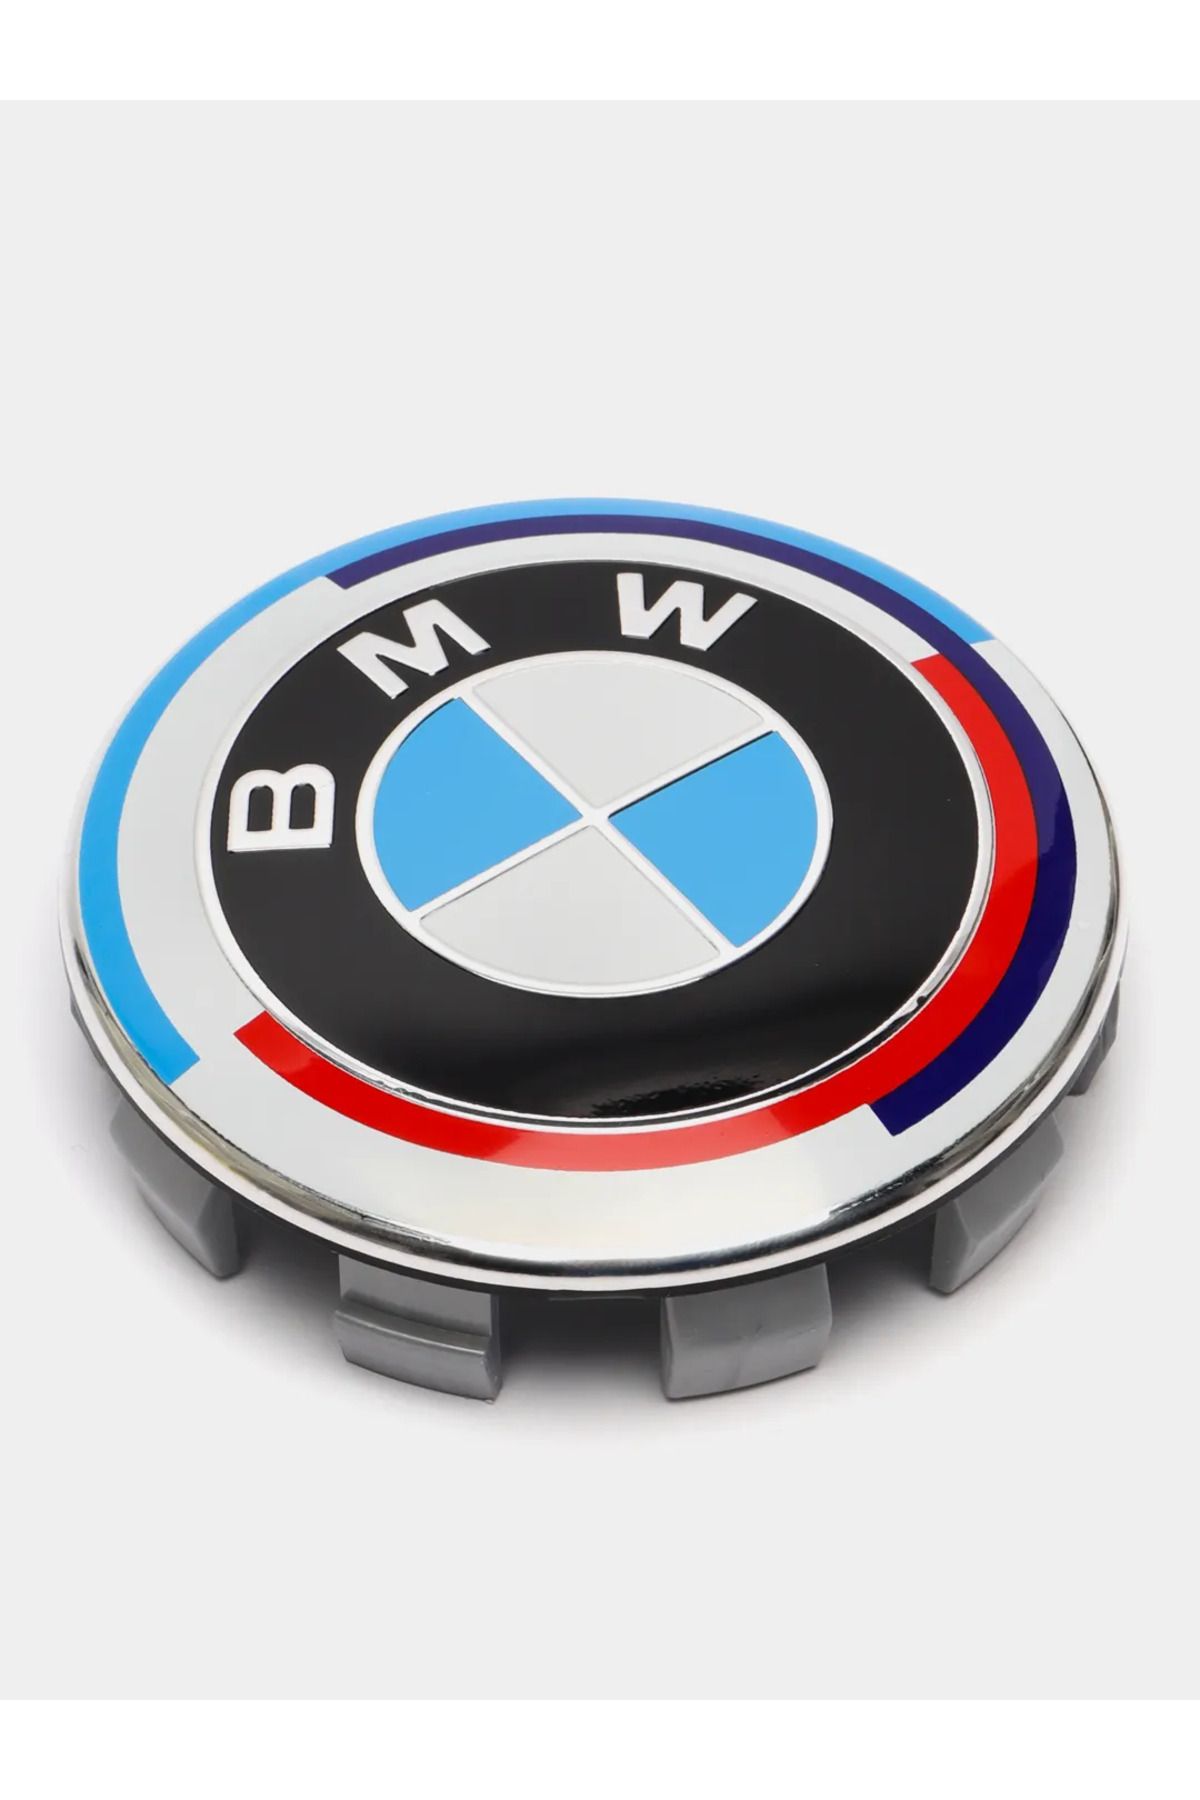 3M BMW Jant Göbeği 4 Adet